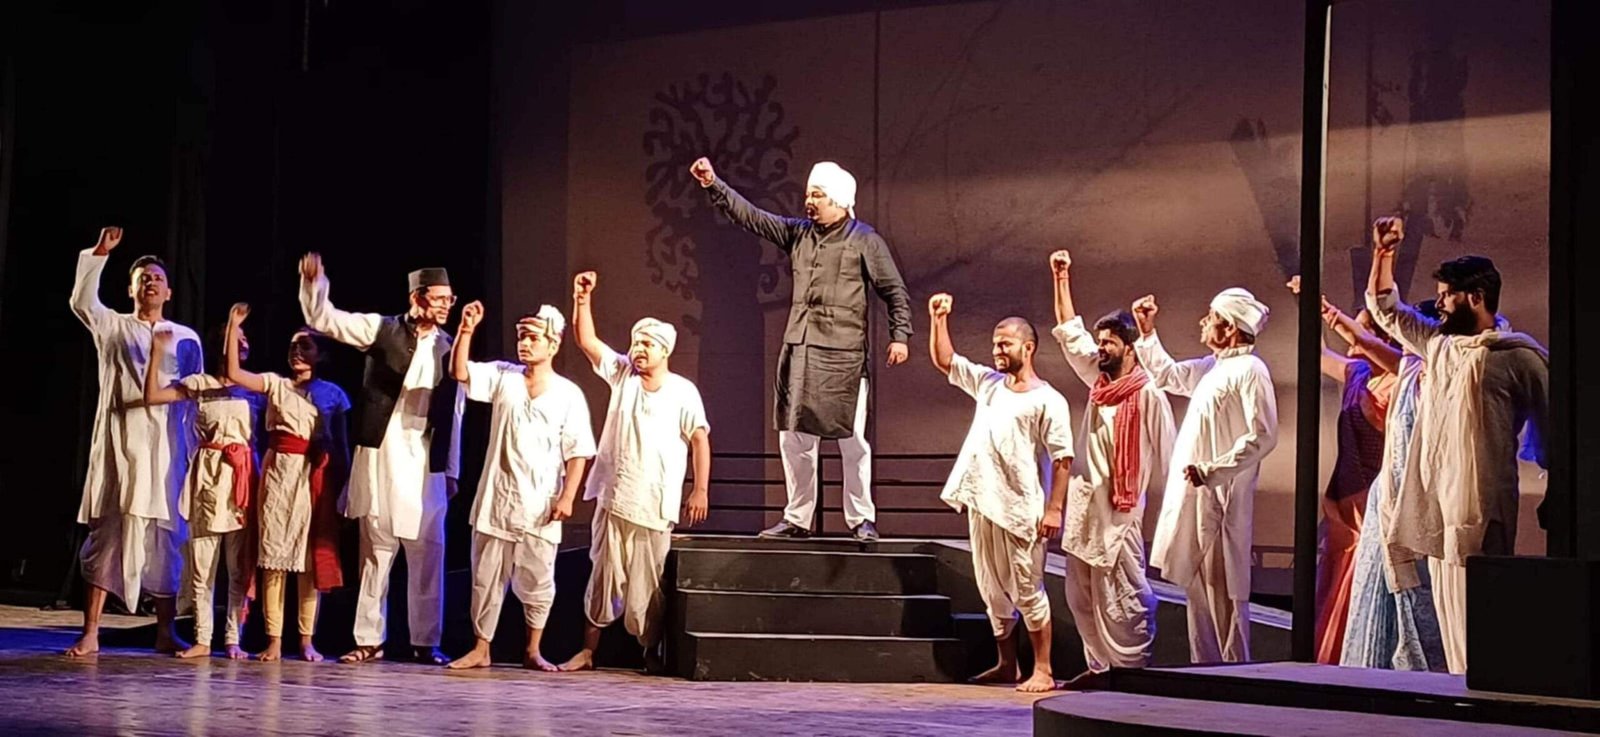 जंग-ए-आजादी की कहानी दुर्गा भाभी की क्रांति-यात्रा पर आधारित नाटक “मैं यहीं हूँ” का मंचन